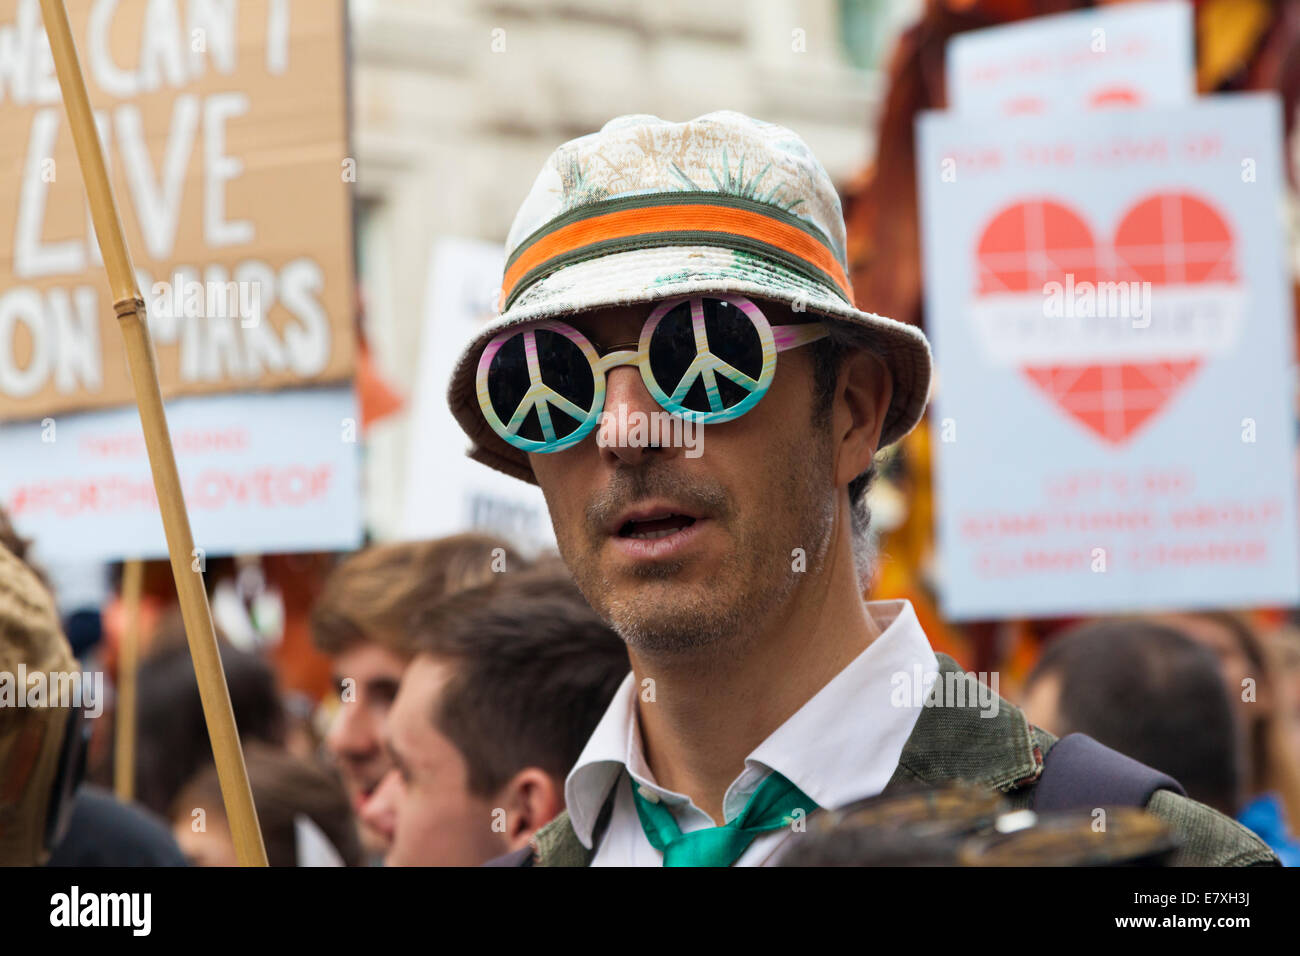 Les gens en matière de changement climatique mars 2014, Londres, Royaume-Uni. 21 septembre 2014. L'Homme à lunettes de la CND. Banque D'Images